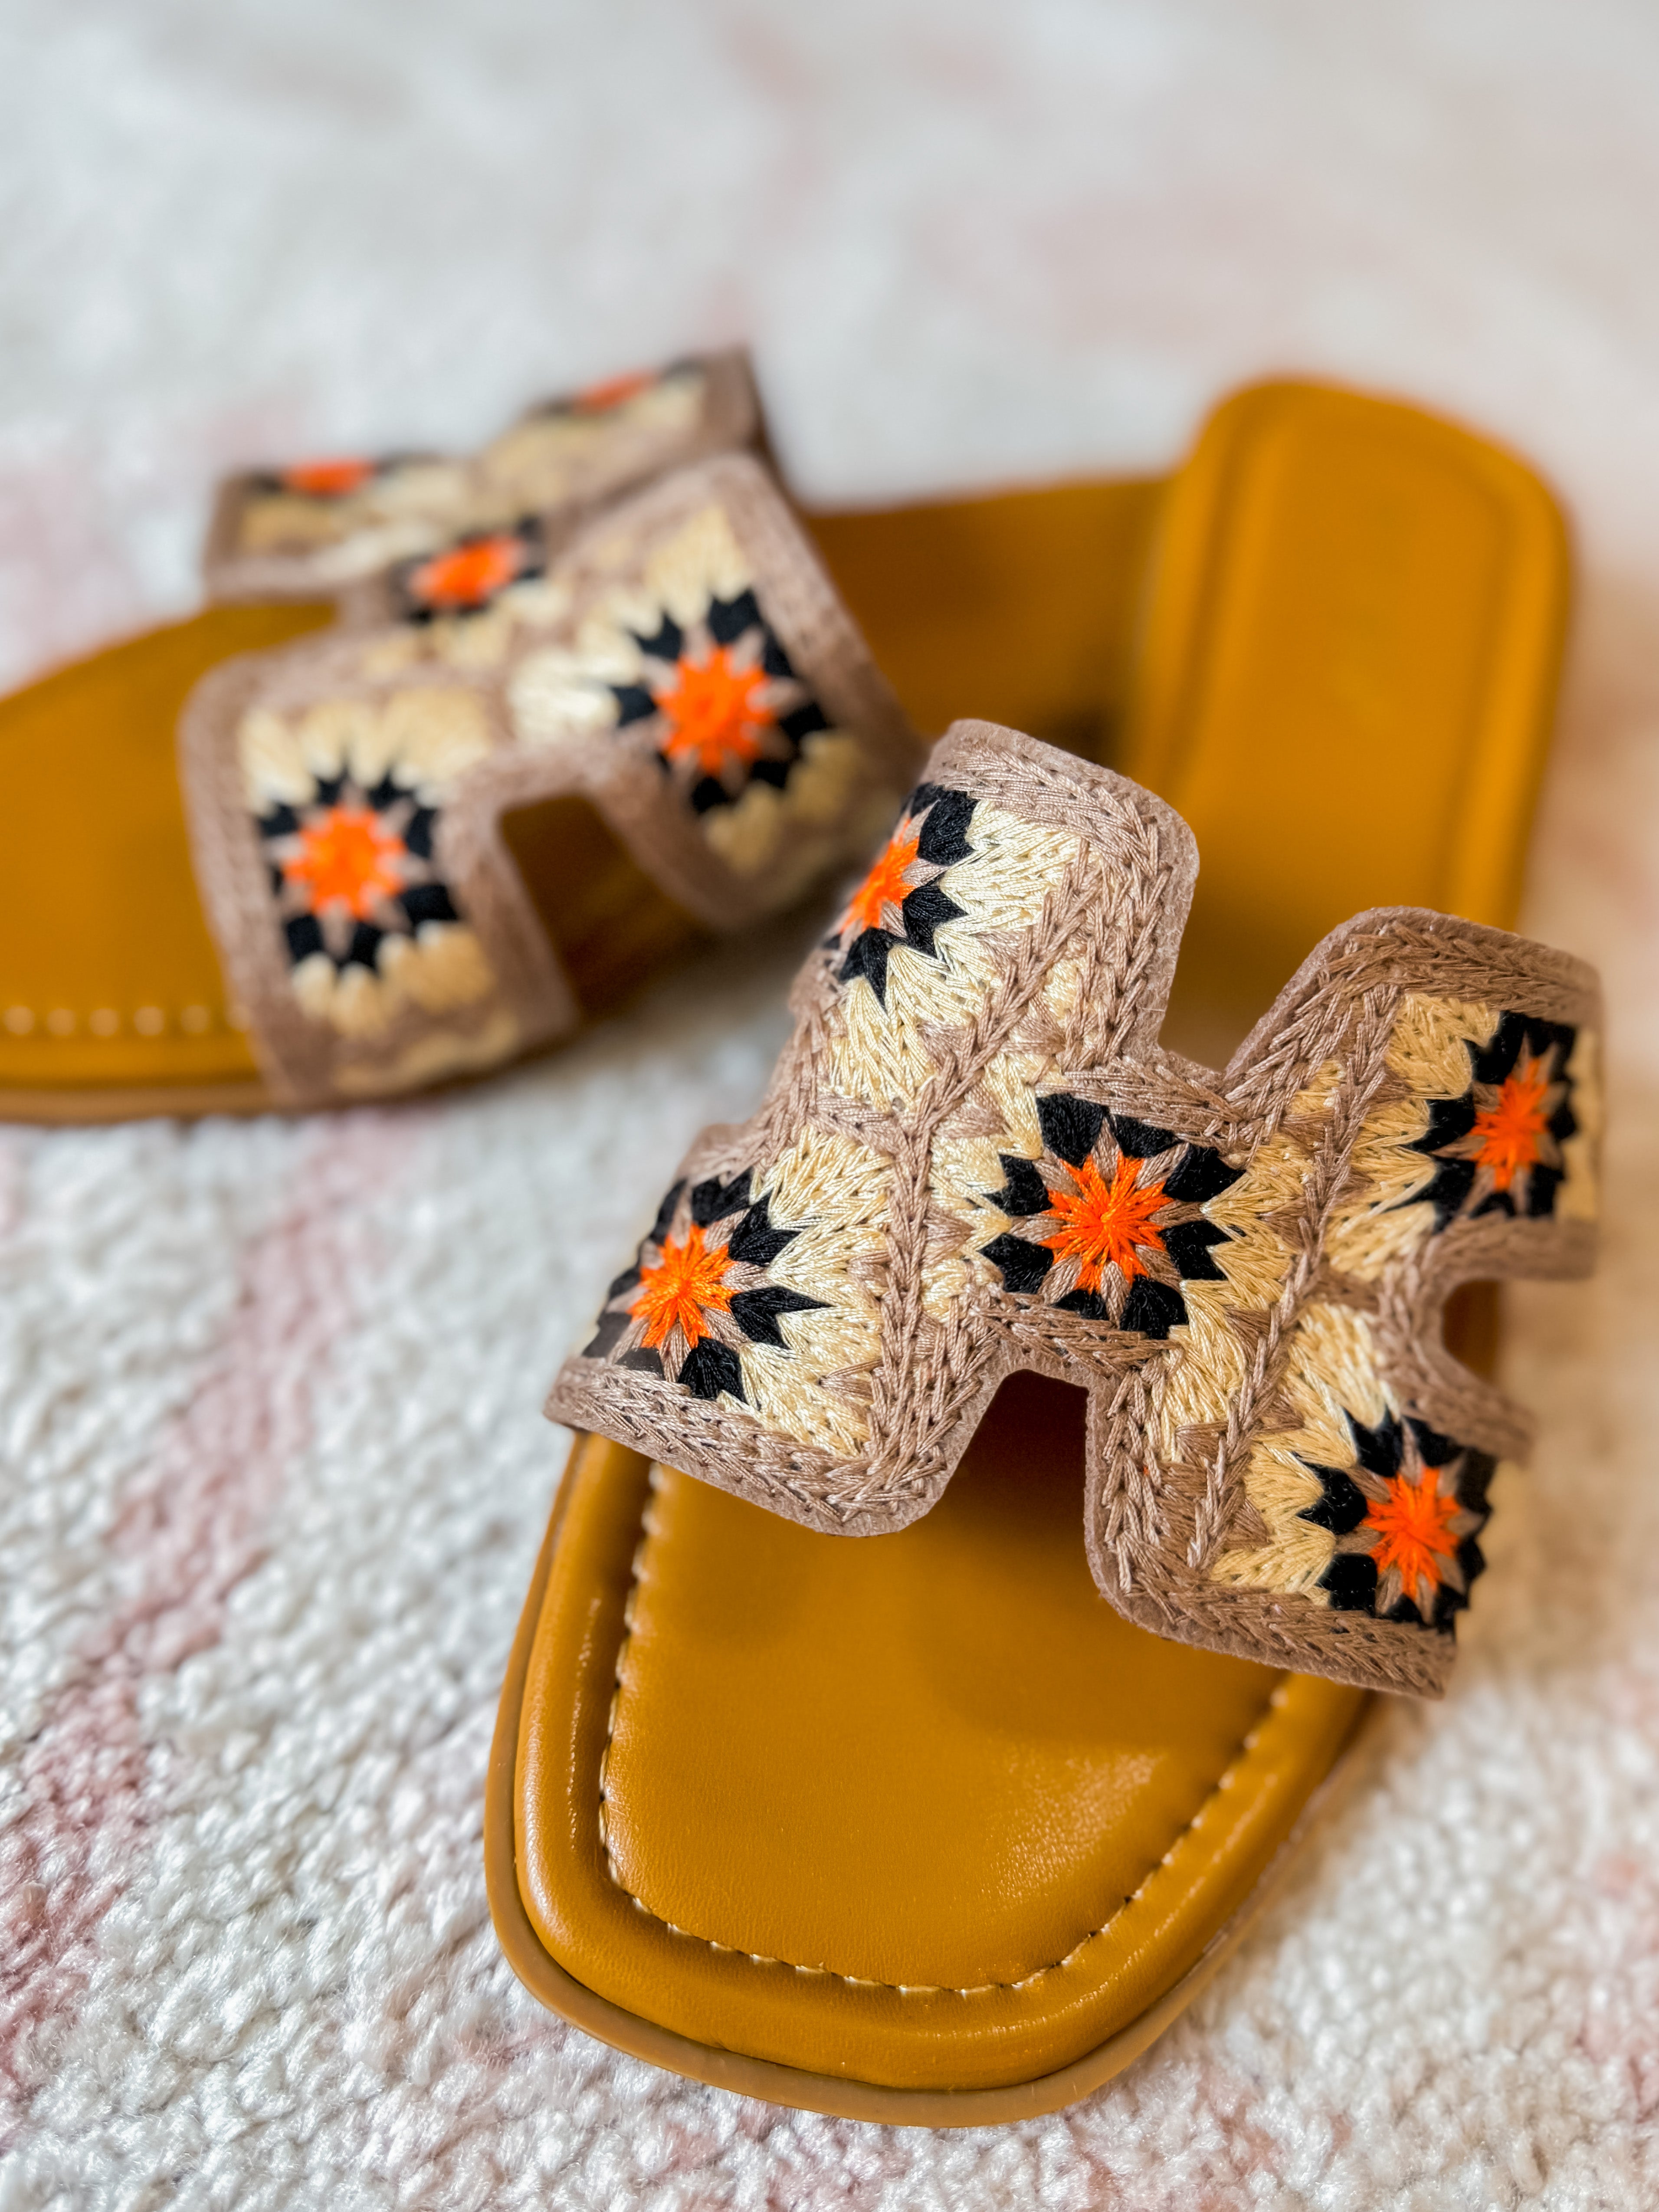 Crochet Sandal in Tan Mix